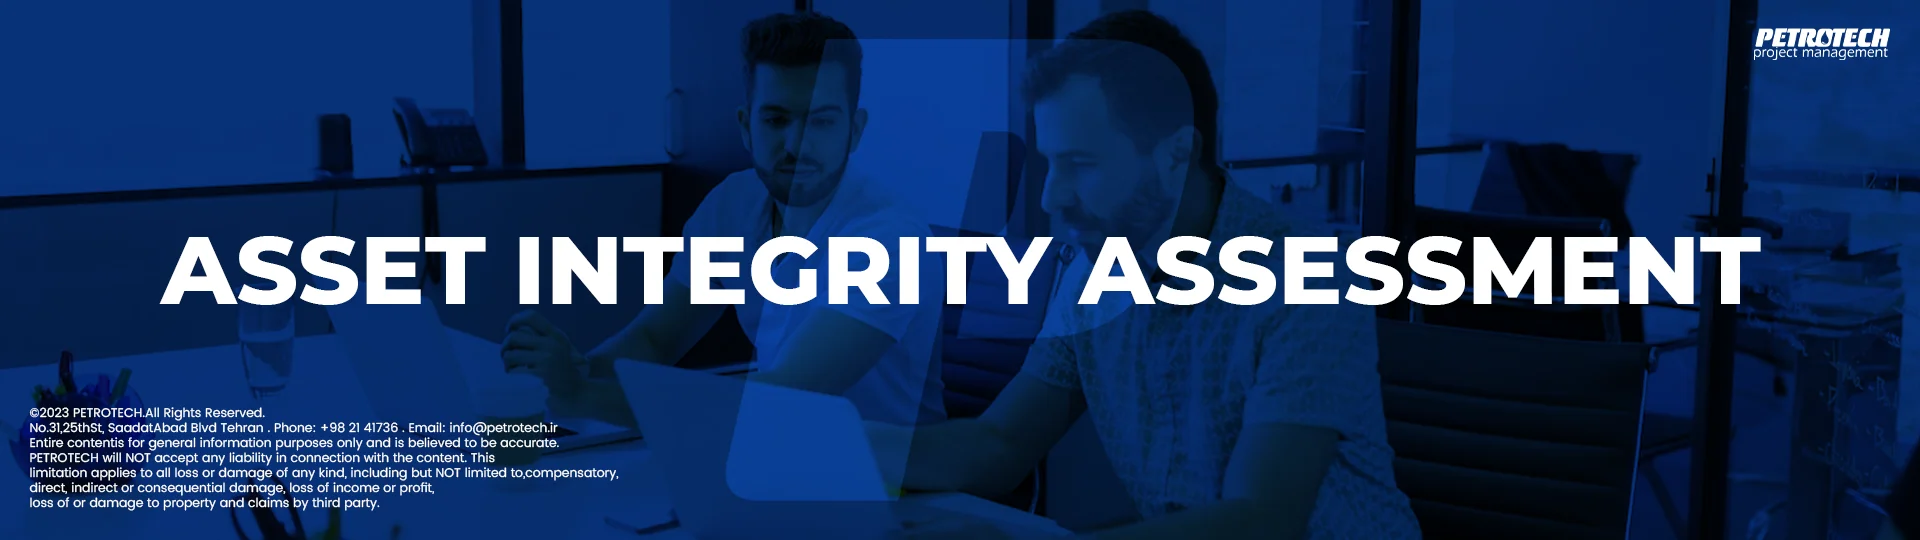 Asset Integrity Assessment